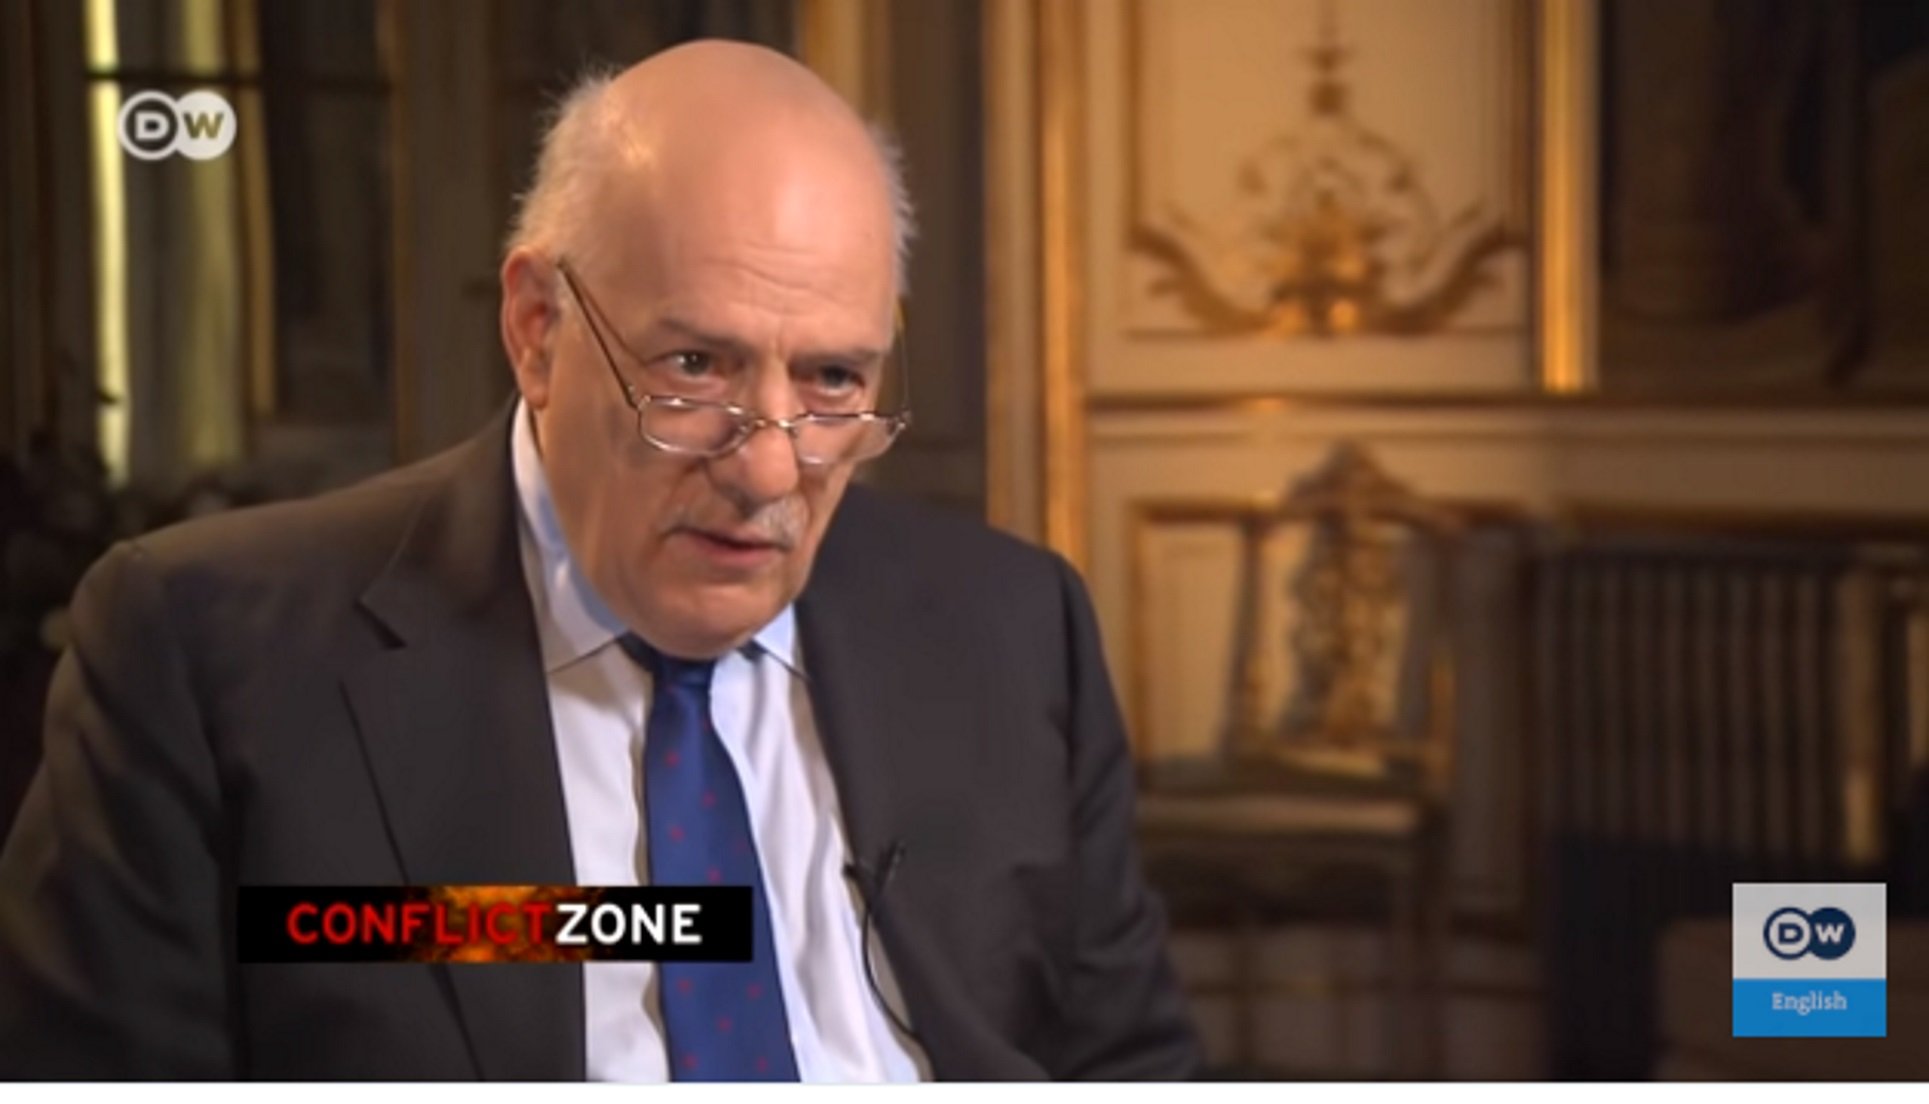 El programa de la TV alemanya que va irritar Borrell vol entrevistar Puigdemont